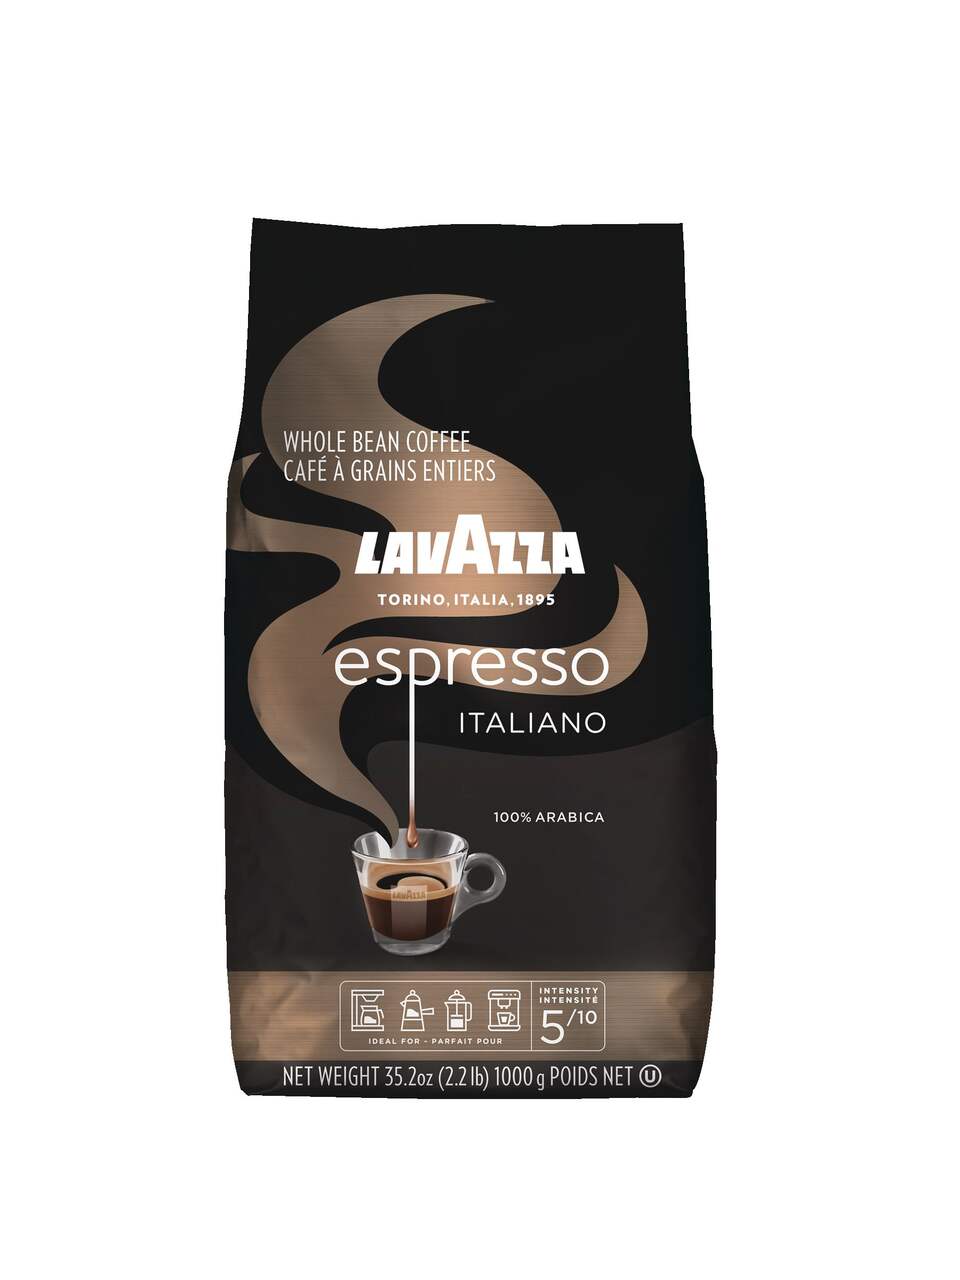 Grains de café Lavazza Espresso Italiano, 1 kg